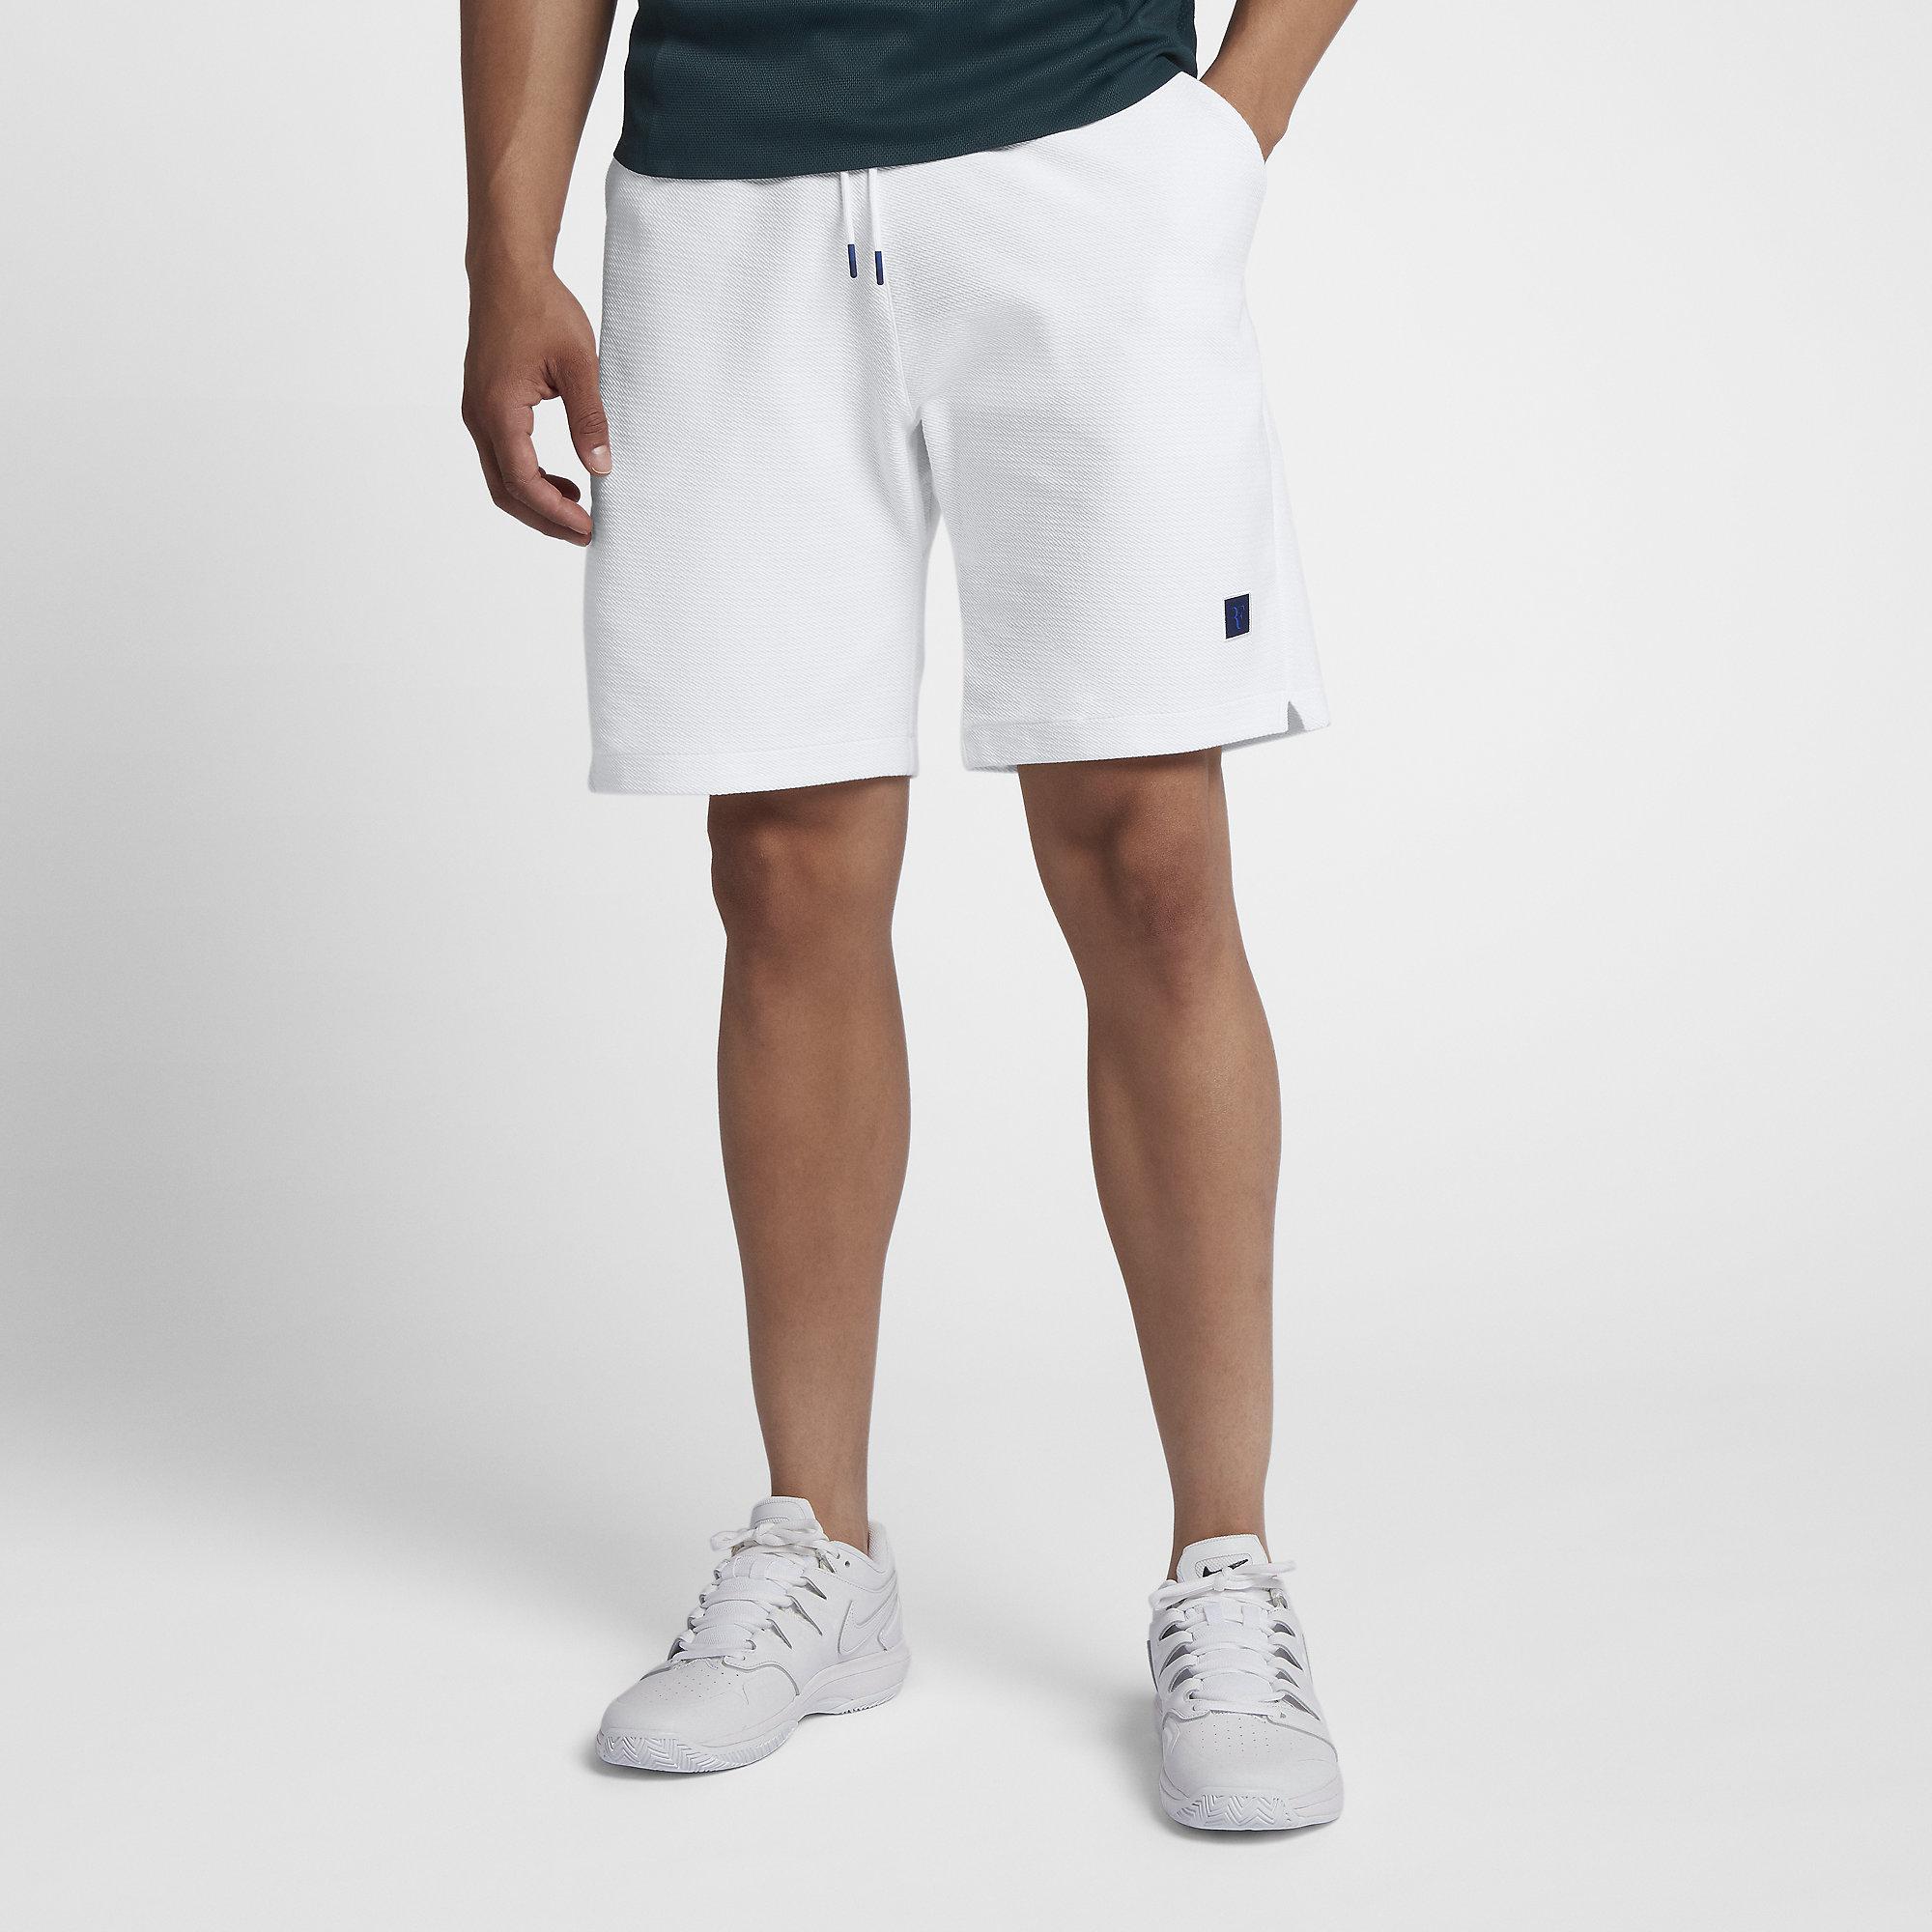 Nike Mens RF Tennis Shorts - White - Tennisnuts.com